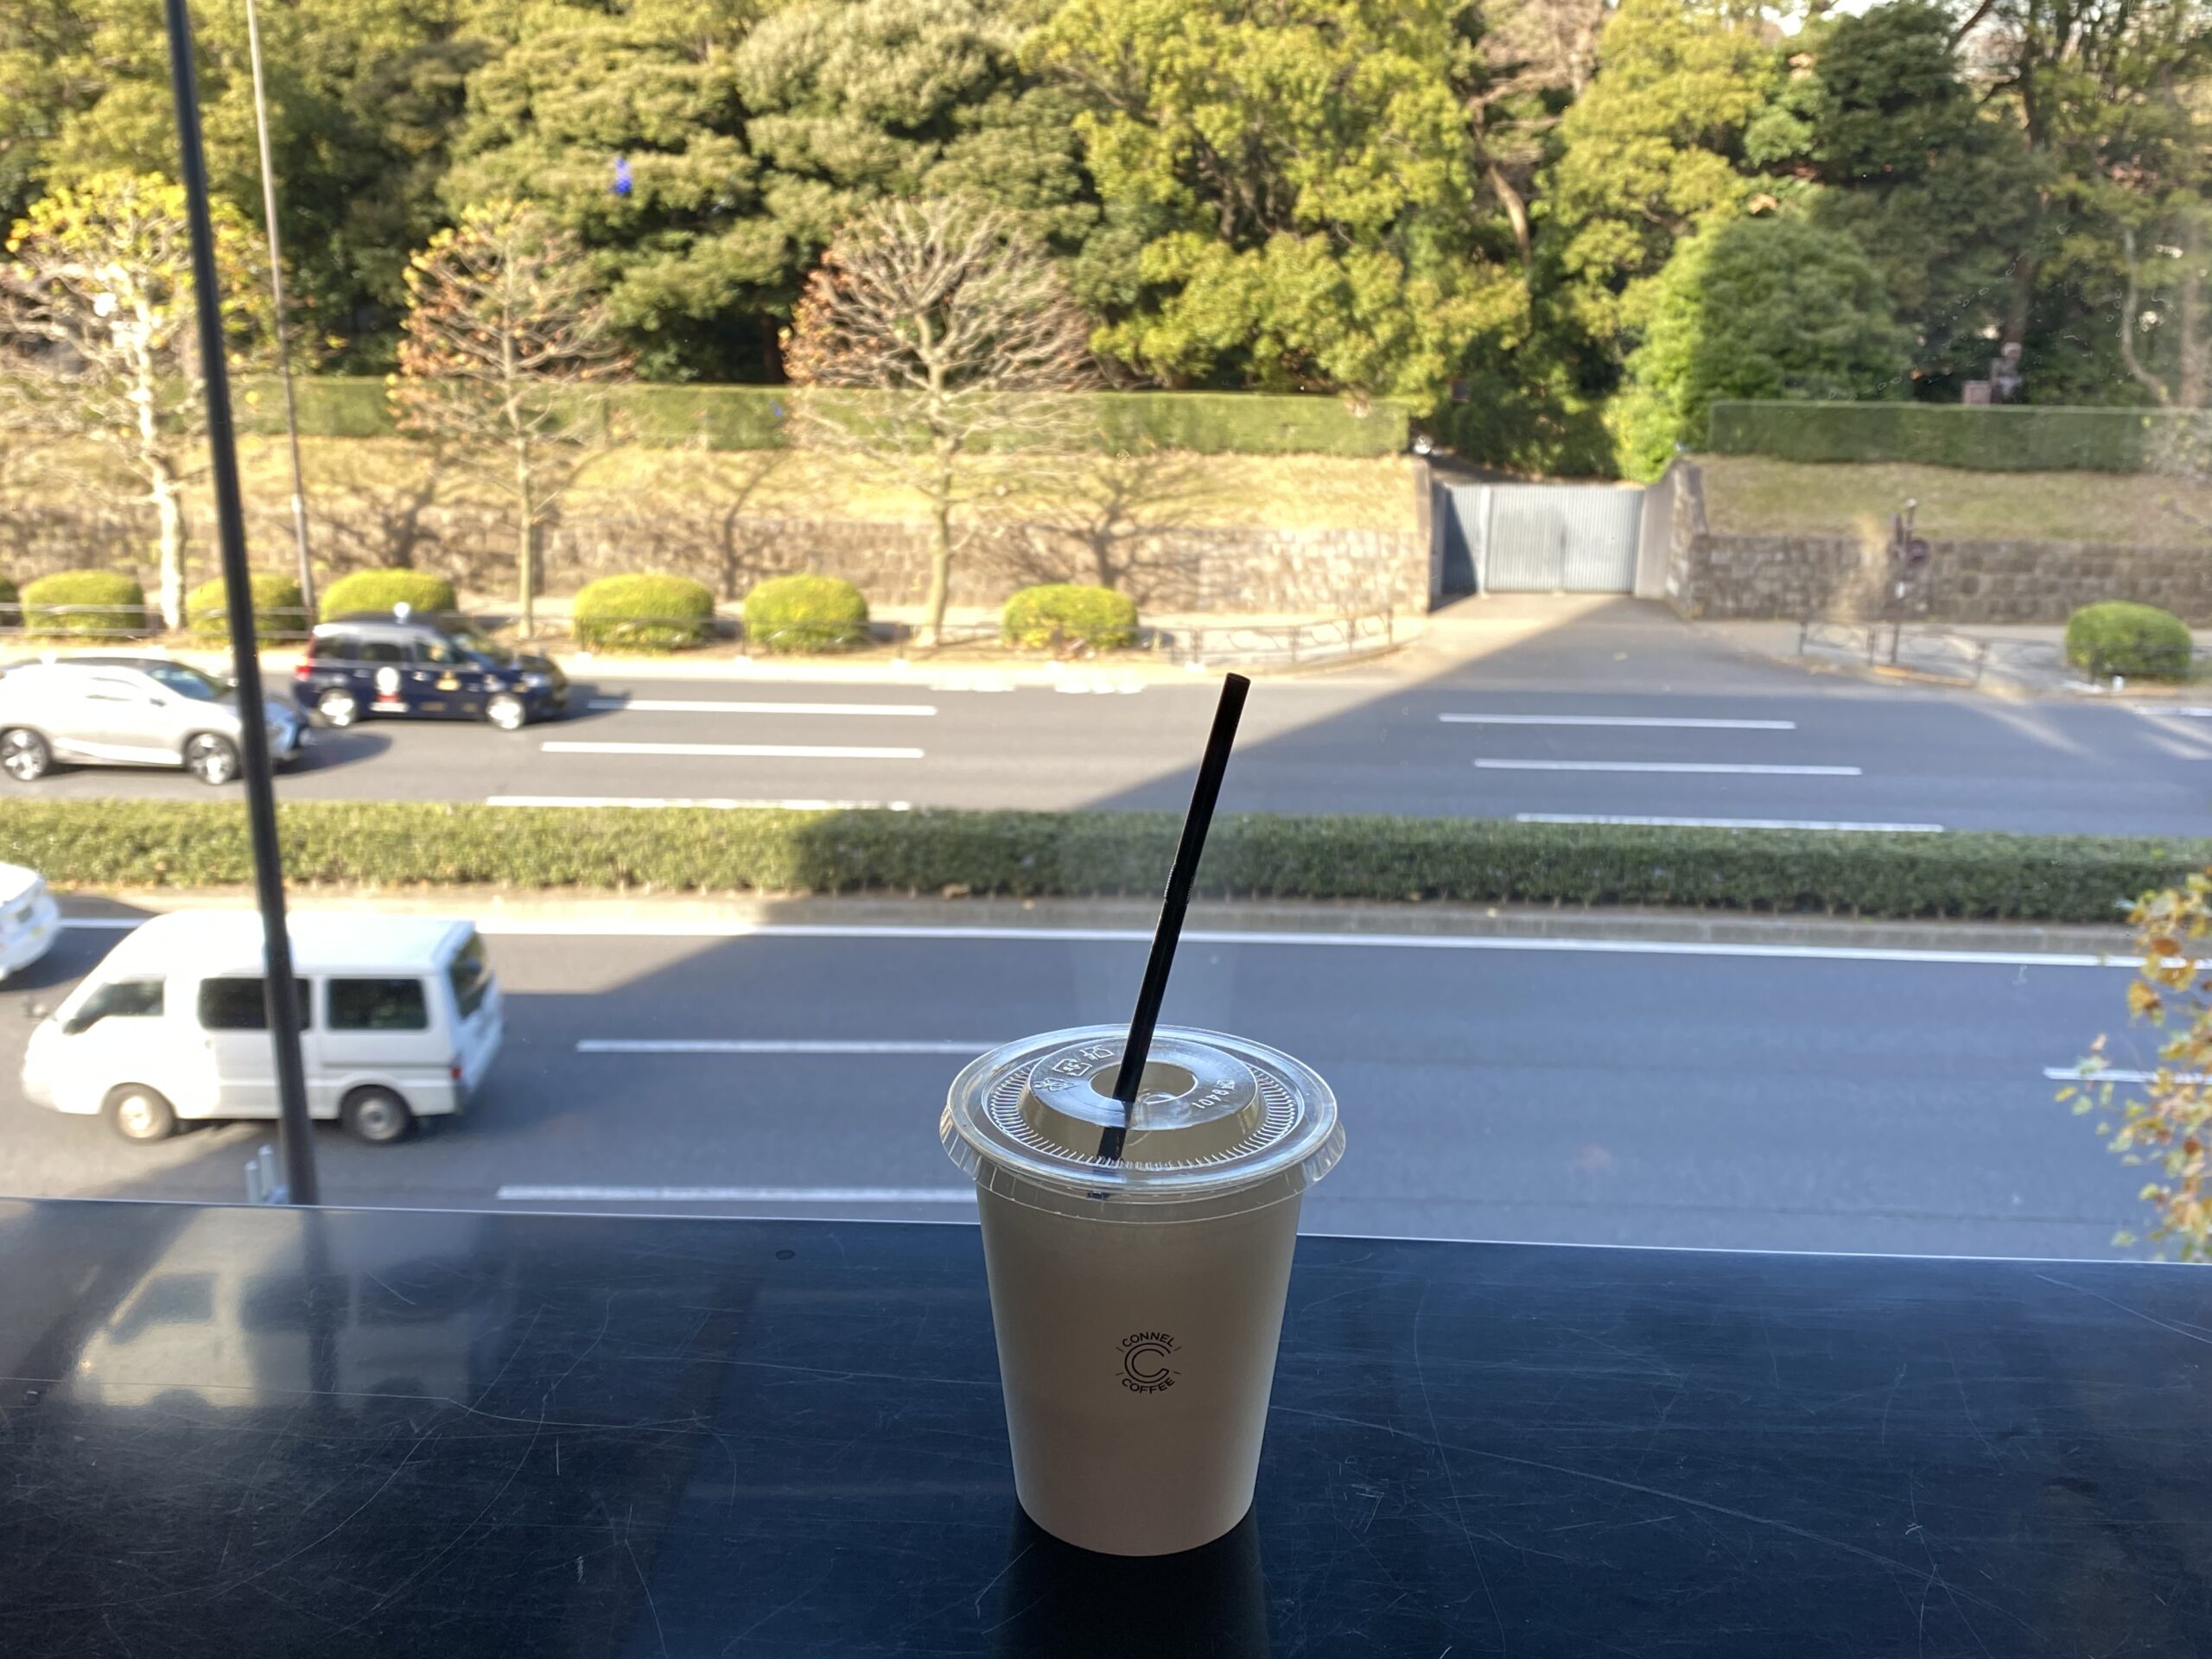 ブルートラベルエンジニア パソコン作業（プログラミング学習環境）におすすめのカフェ|青山・六本木 Connel Coffee（コーネル・コーヒー）